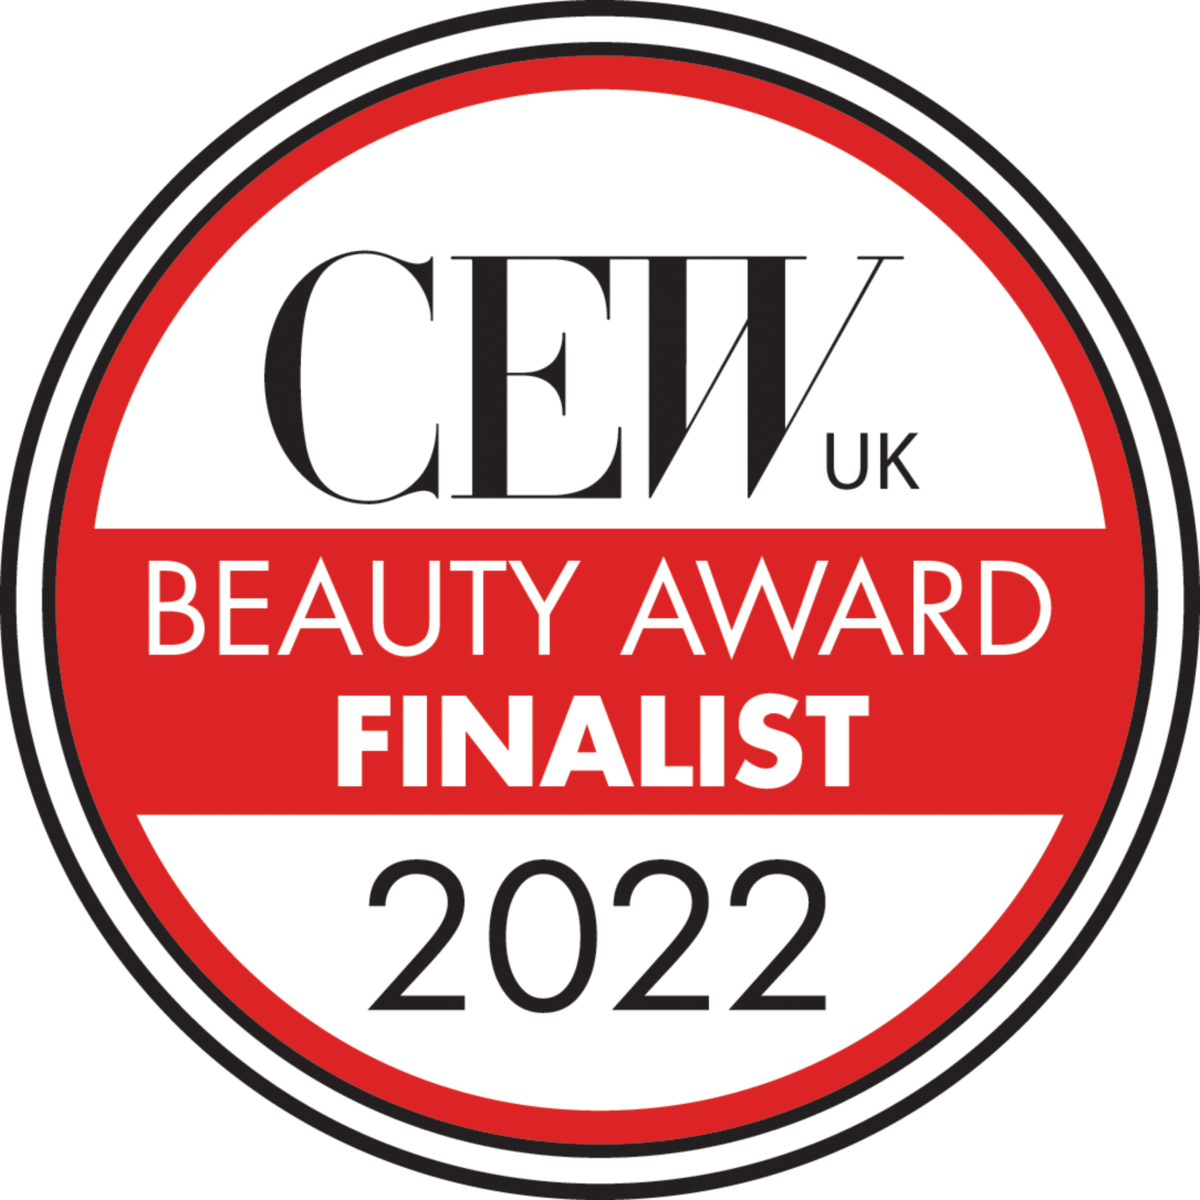 CEW UK, Beauty award finalist 2022